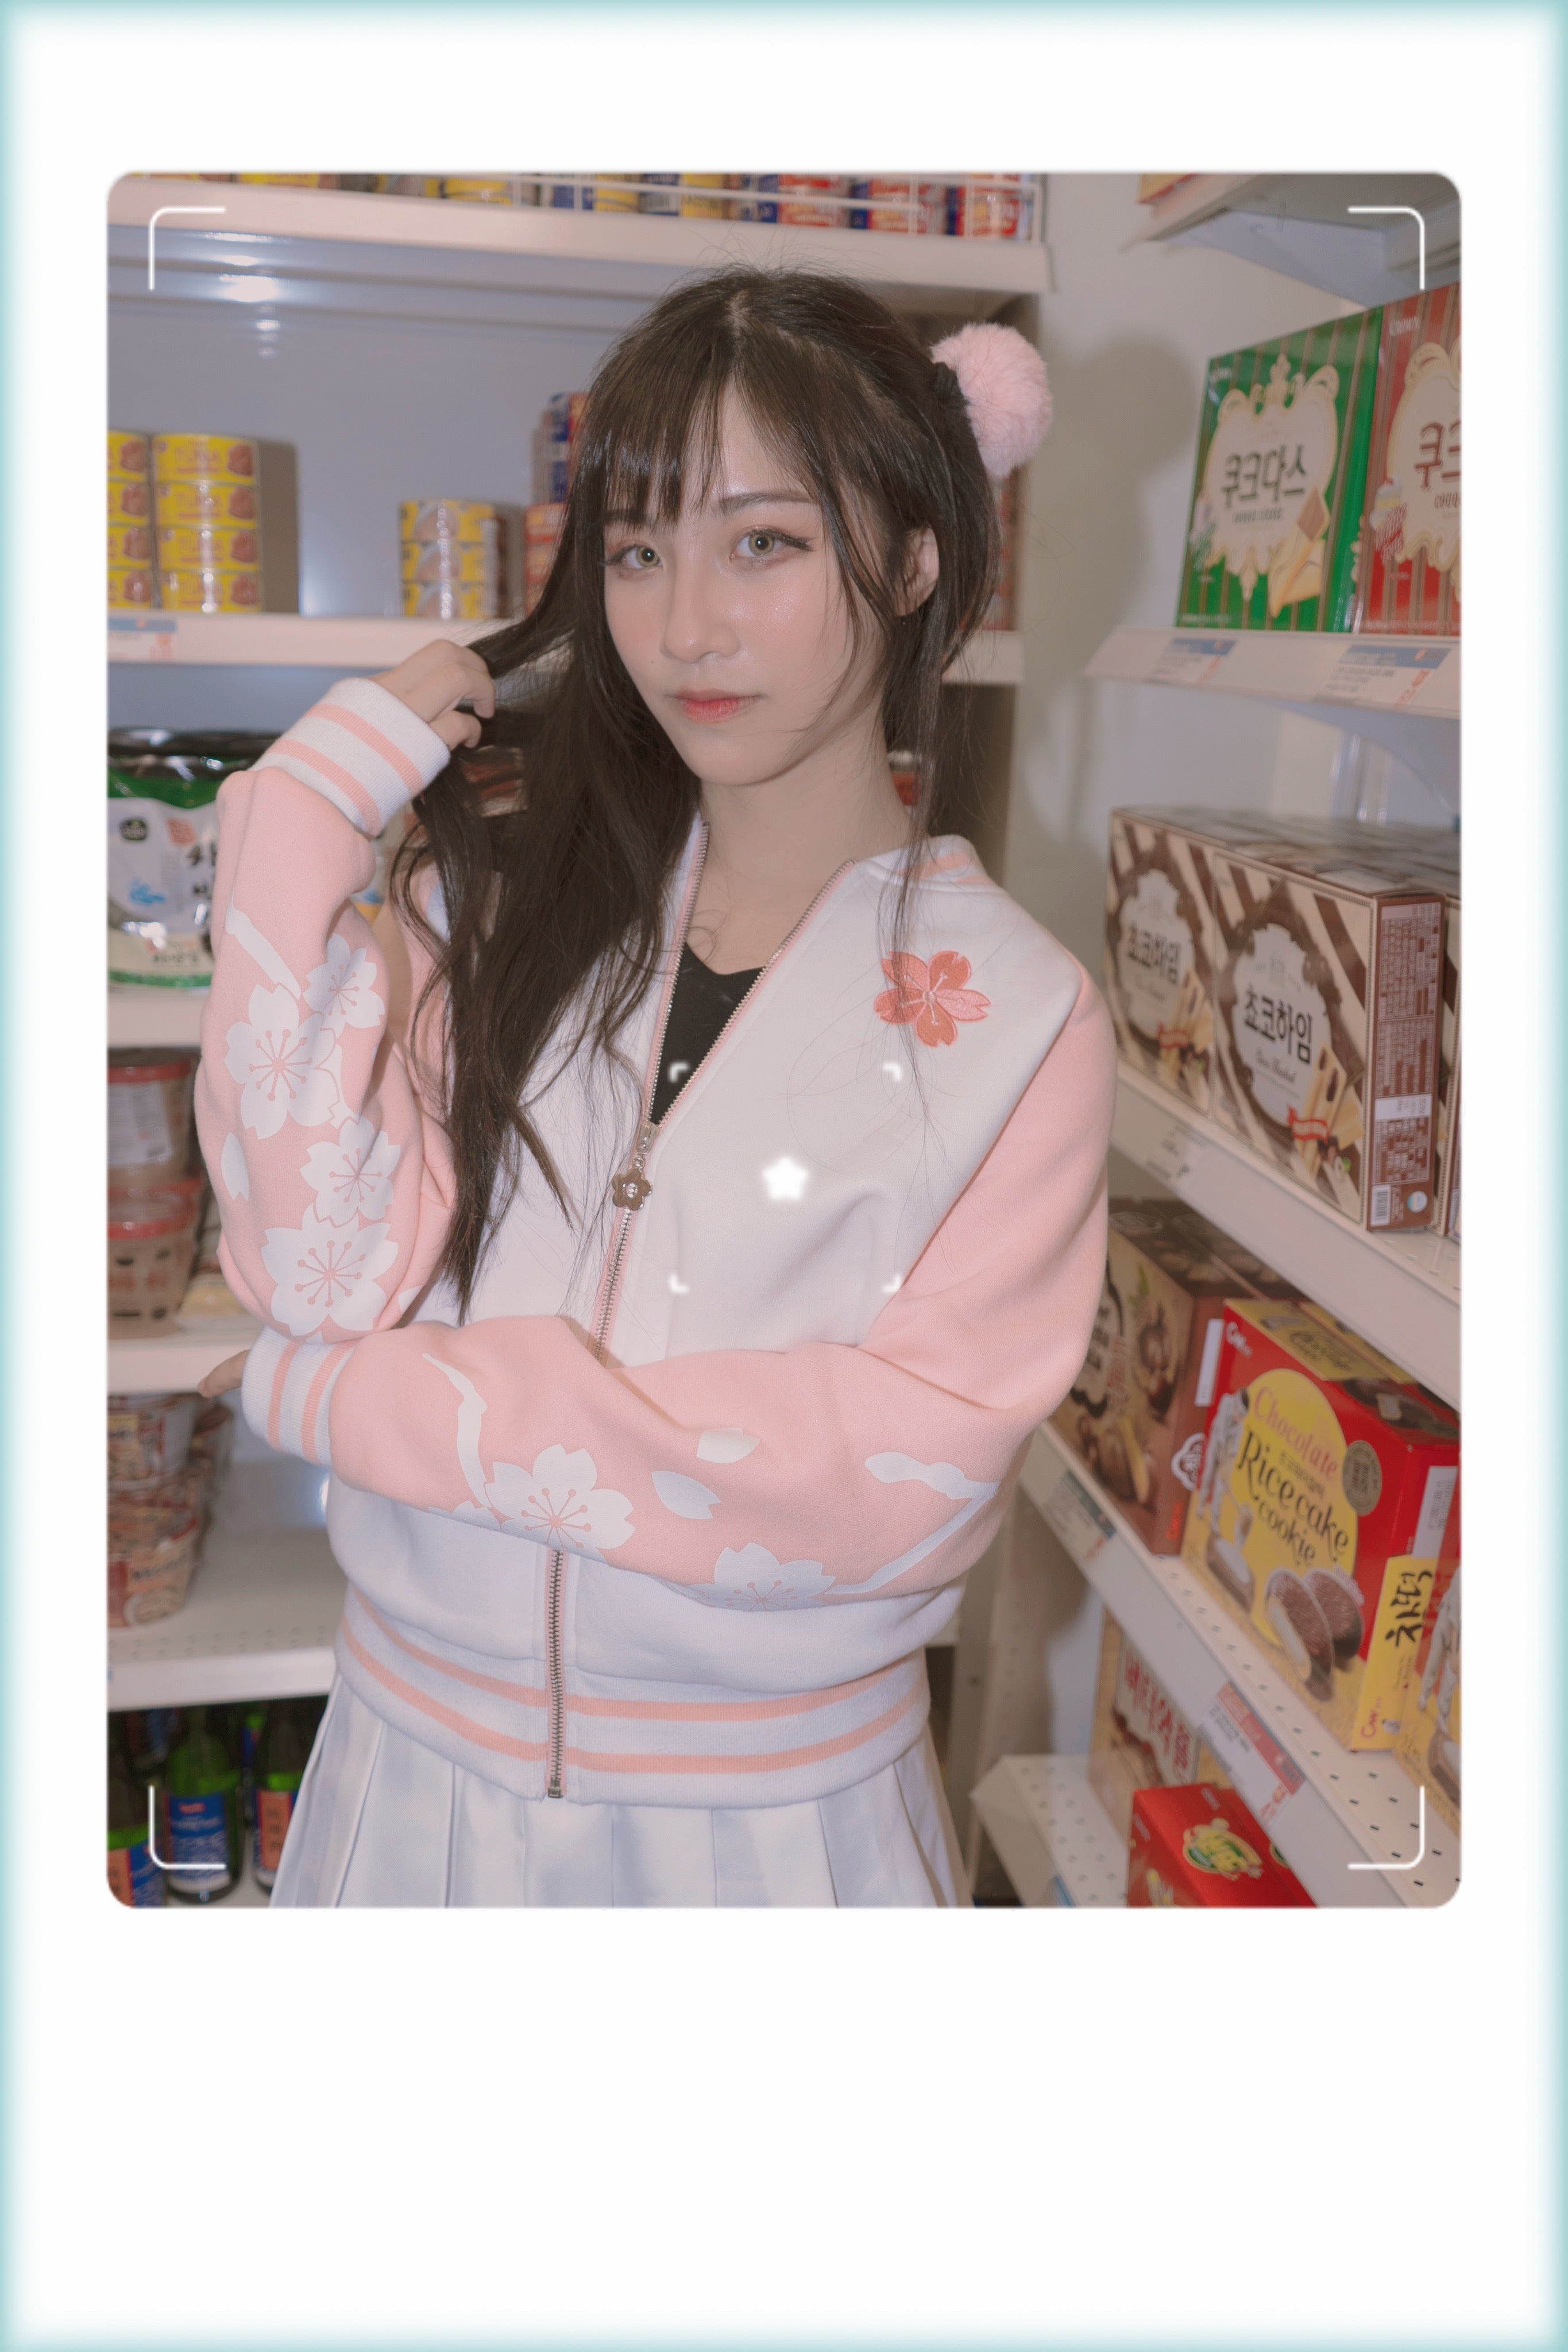 Sakura Blossom Ita Jacket (PRE-ORDER)